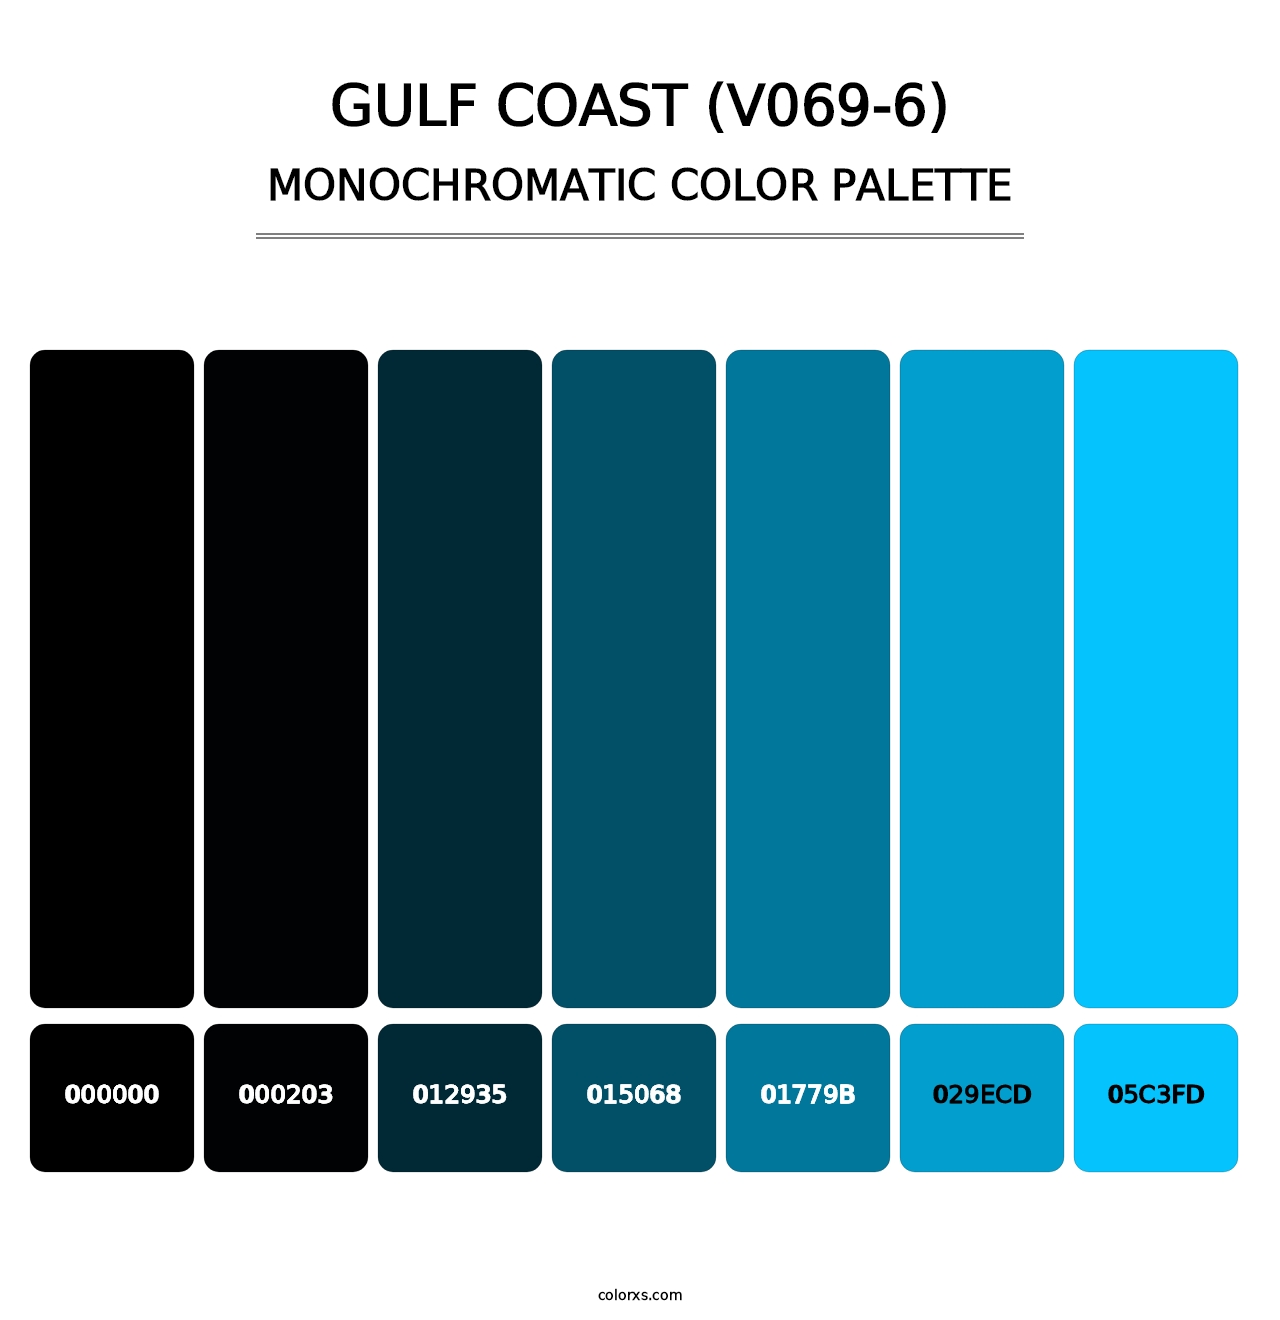 Gulf Coast (V069-6) - Monochromatic Color Palette